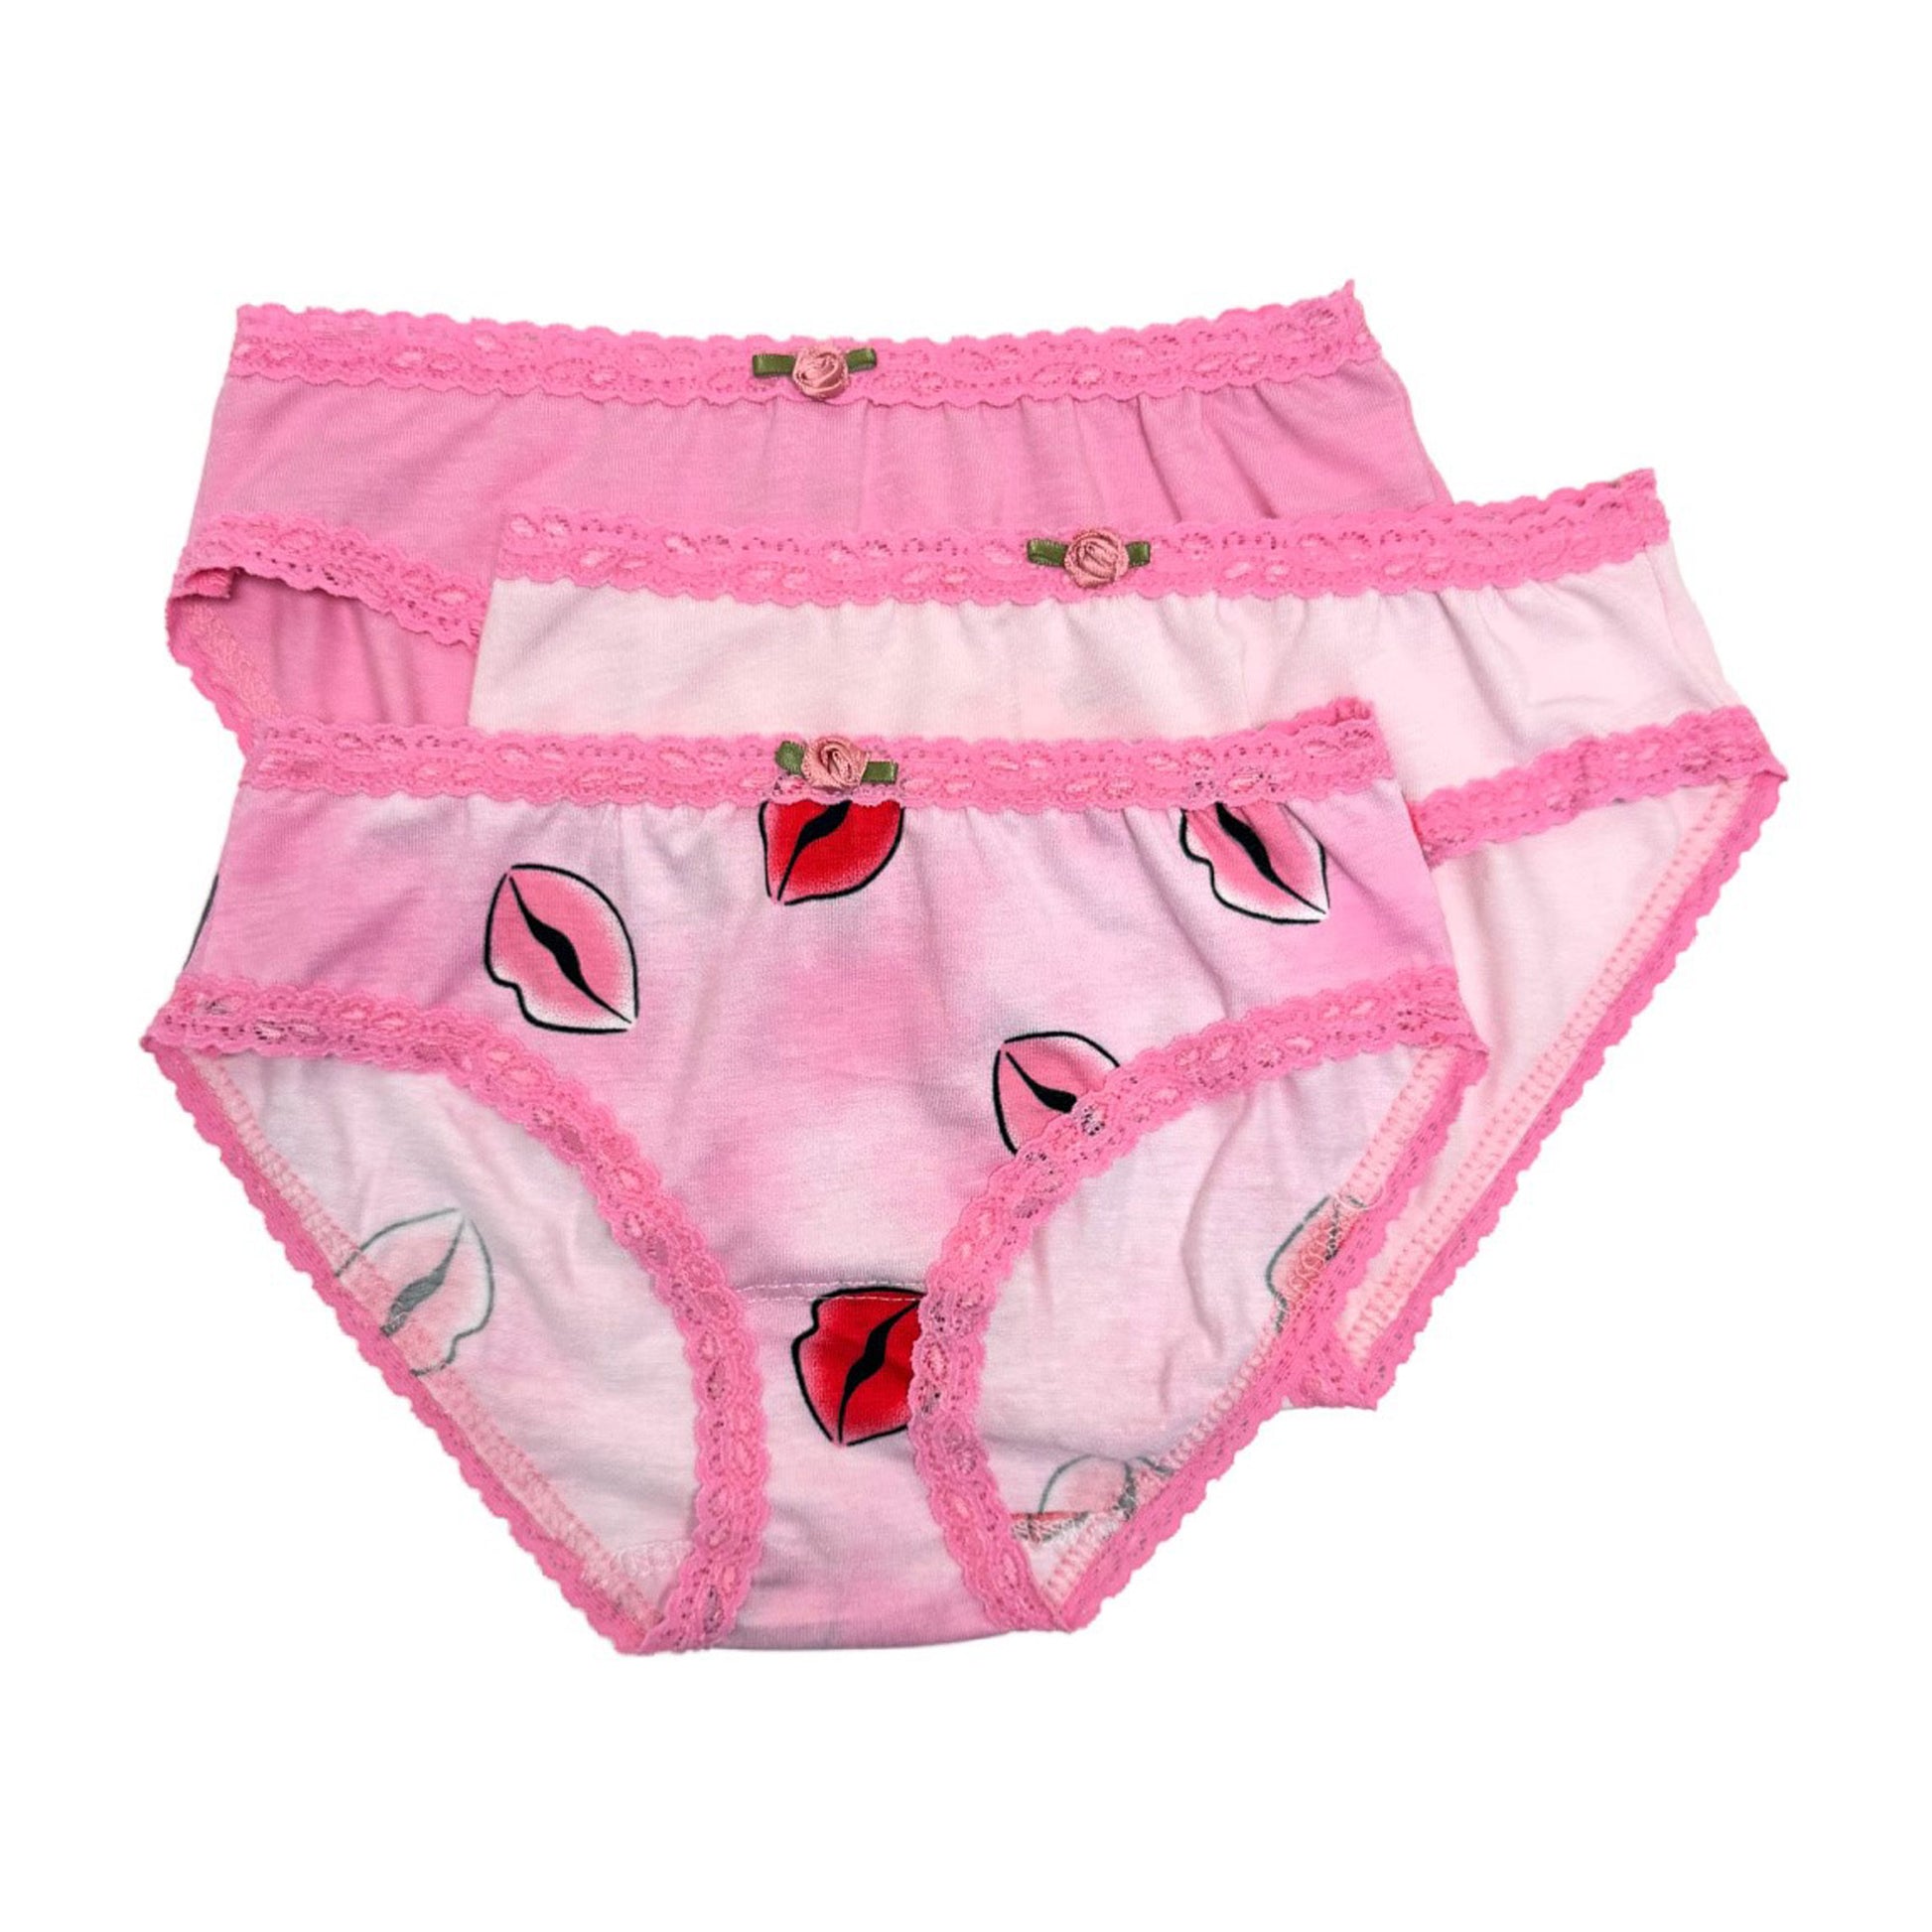 U20 Esme Girl's 3-Pack Panty in Patterns Heart Kiss